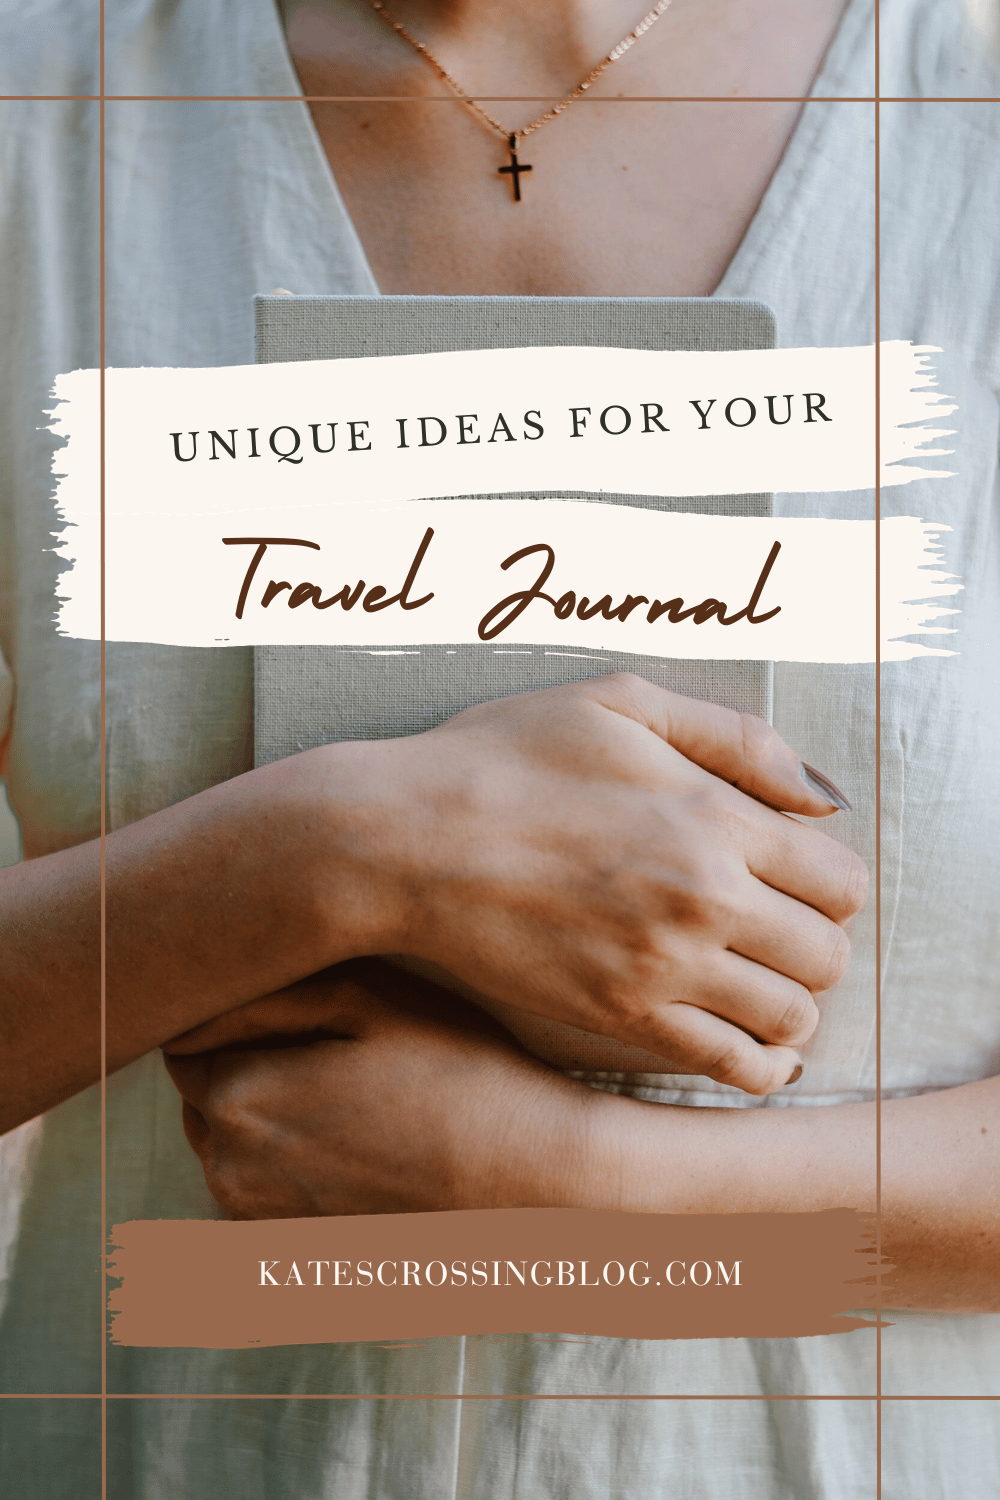 Travel Journal Ideas